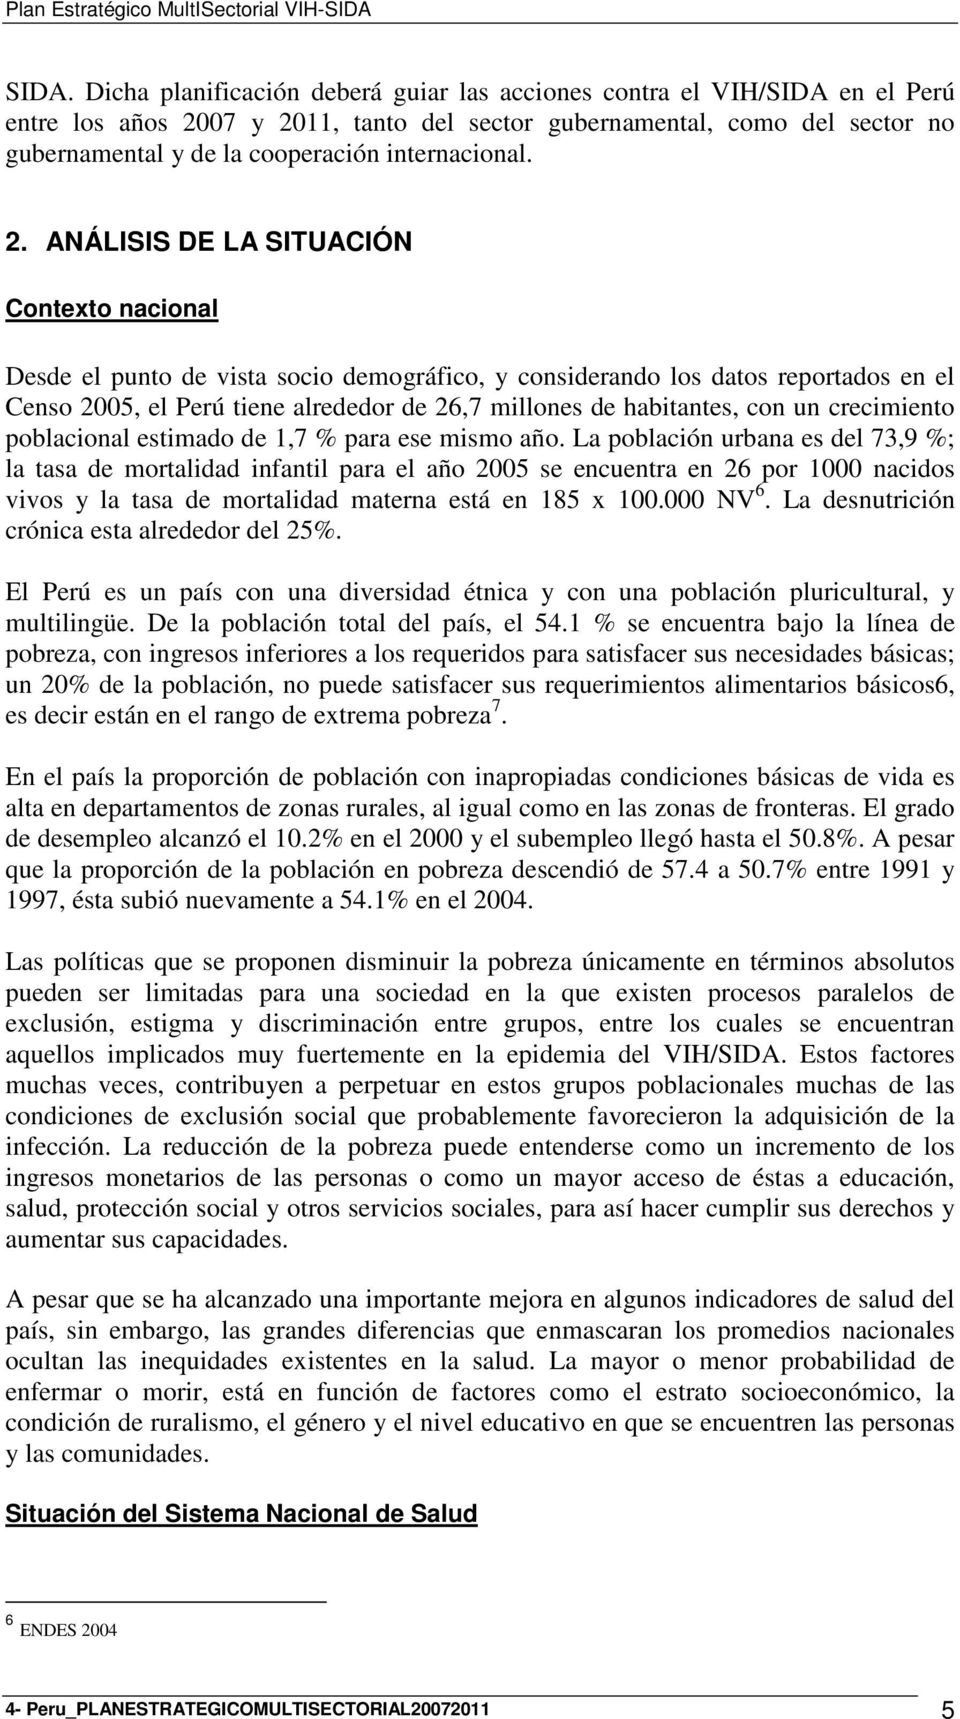 ANÁLISIS DE LA SITUACIÓN Contexto nacional Desde el punto de vista socio demográfico, y considerando los datos reportados en el Censo 2005, el Perú tiene alrededor de 26,7 millones de habitantes, con